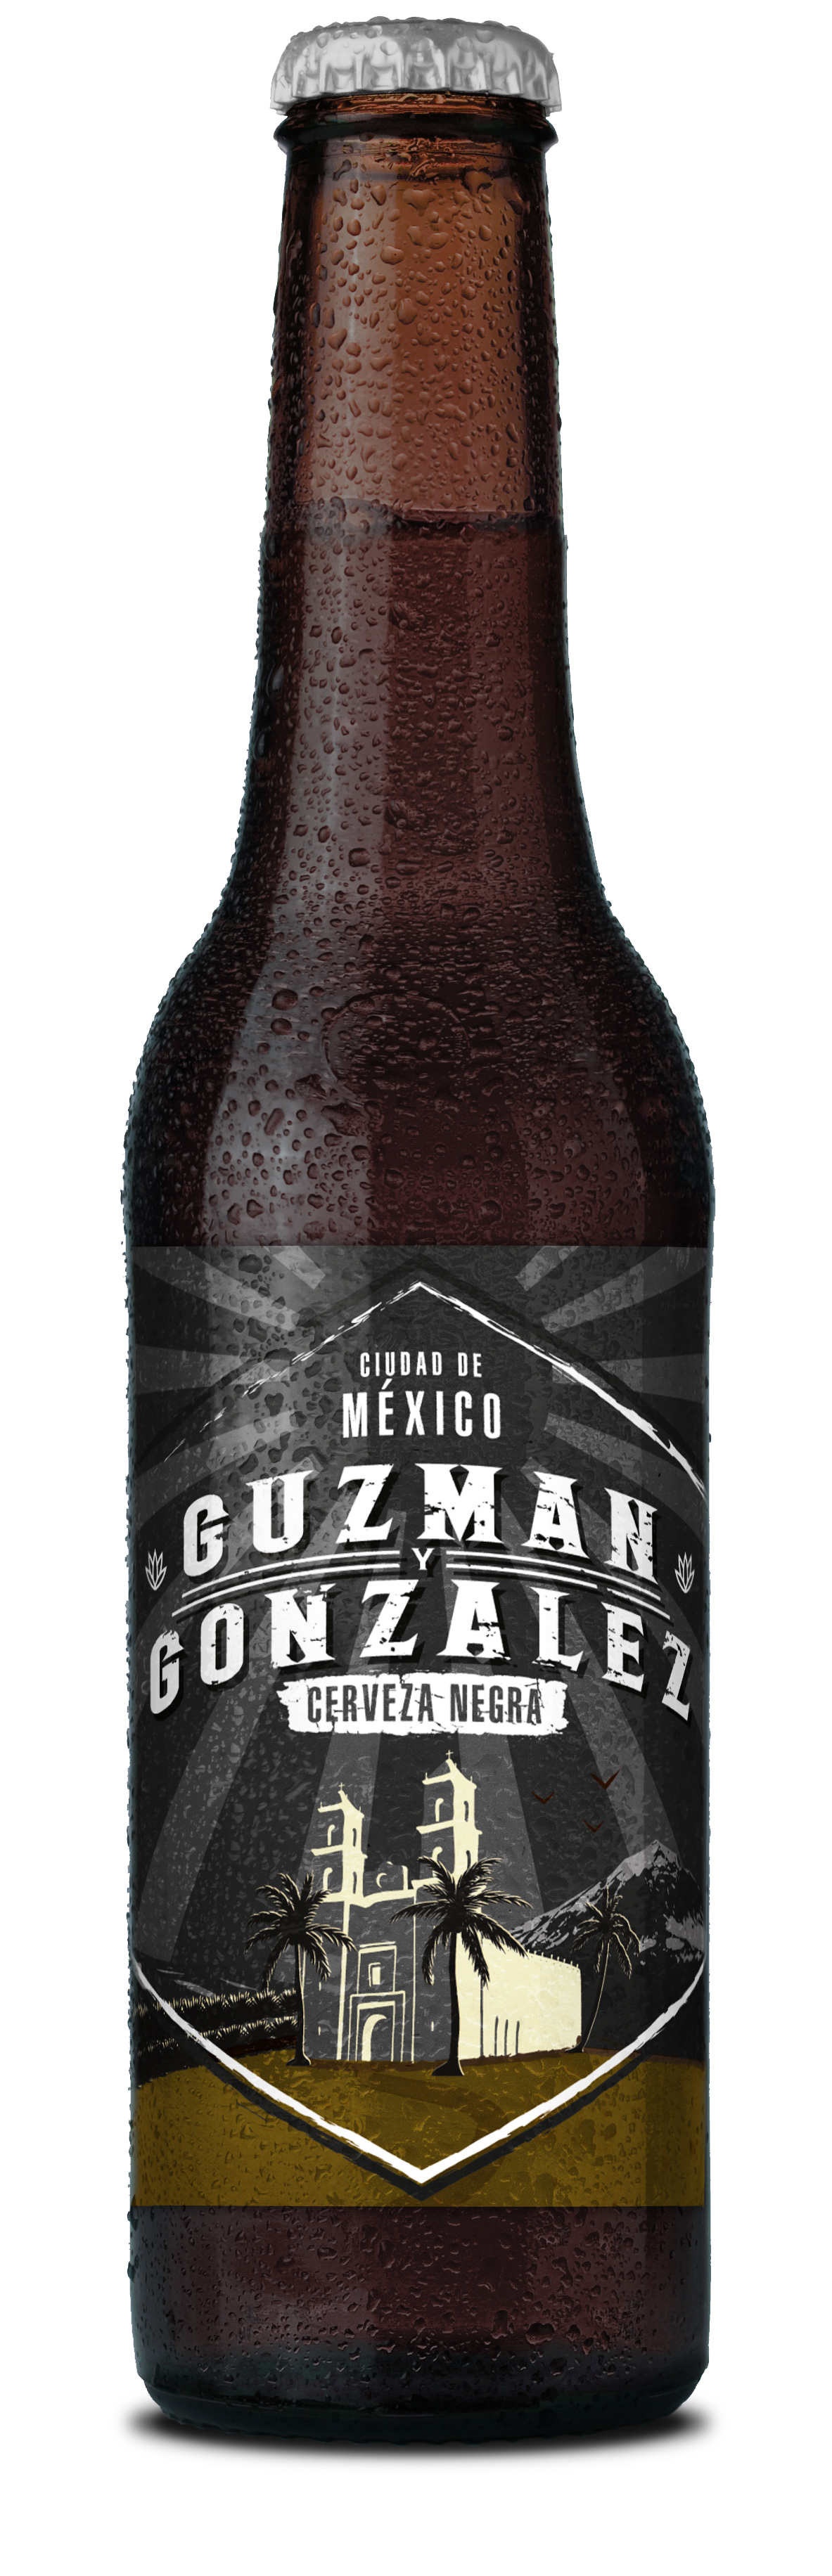 Guzman y Gonzalez Cerveza Negra